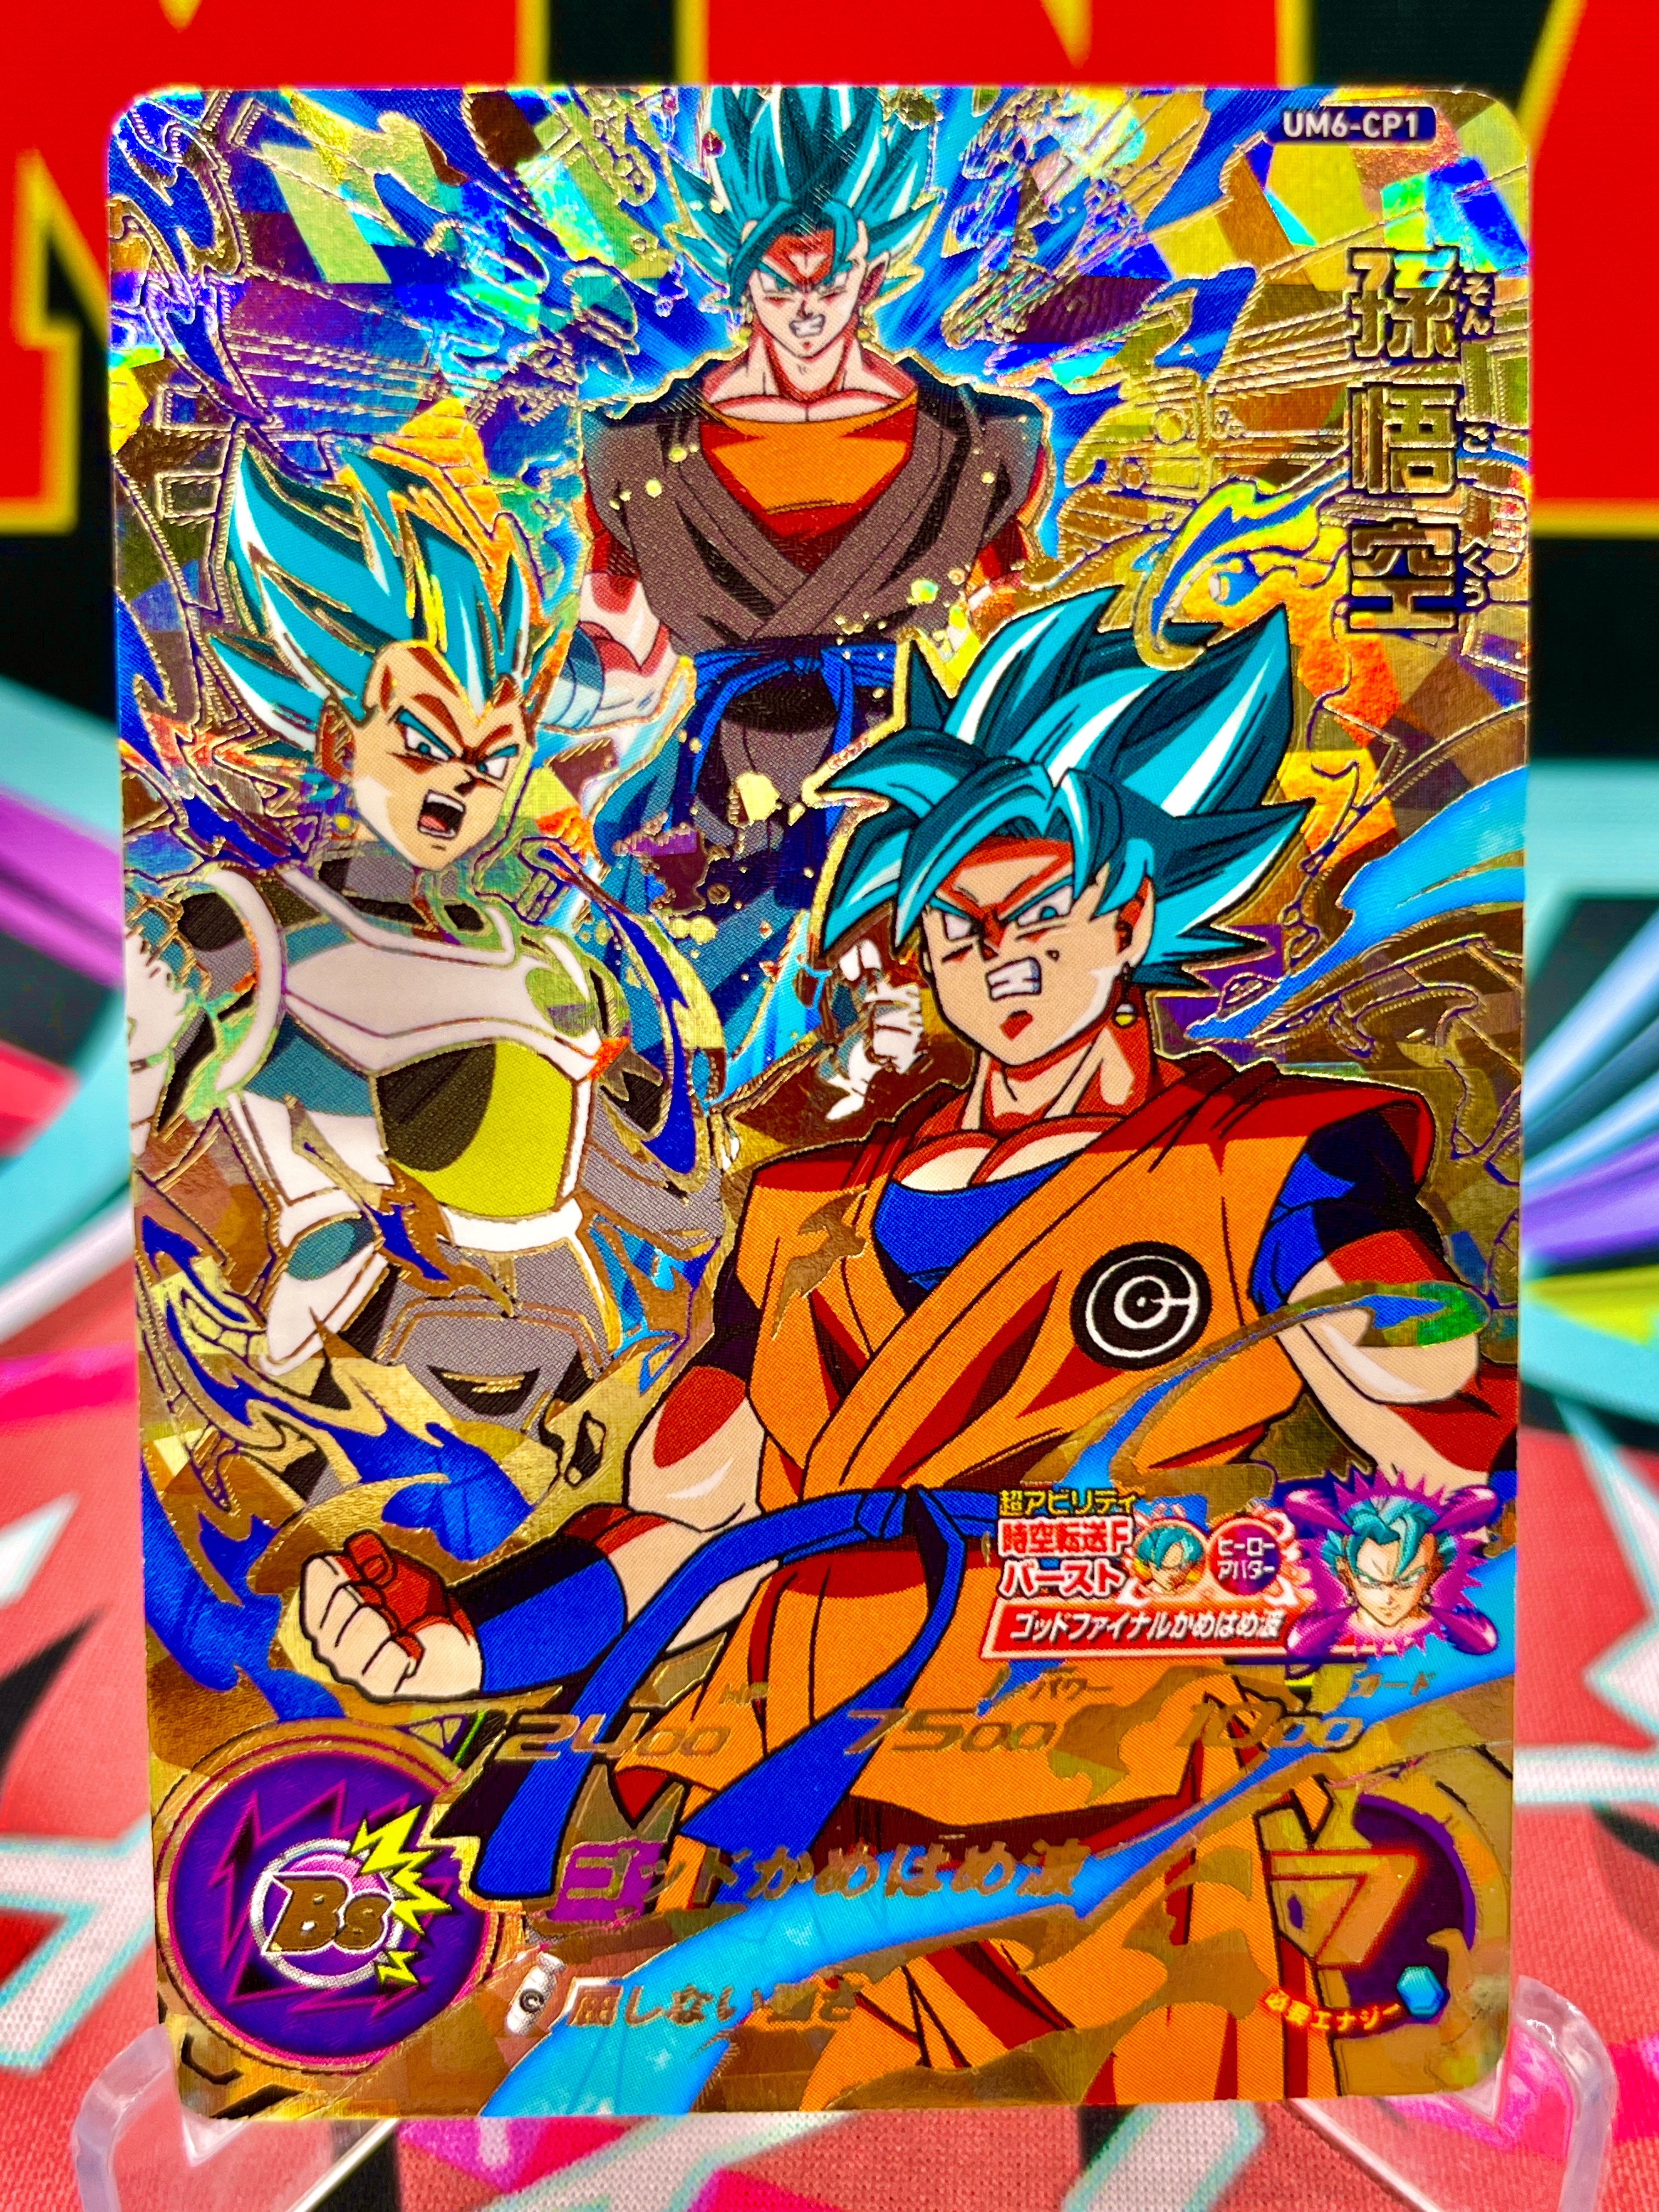 UM6-CP1 Son Goku, Vegeta, & Vegito CP (2019)